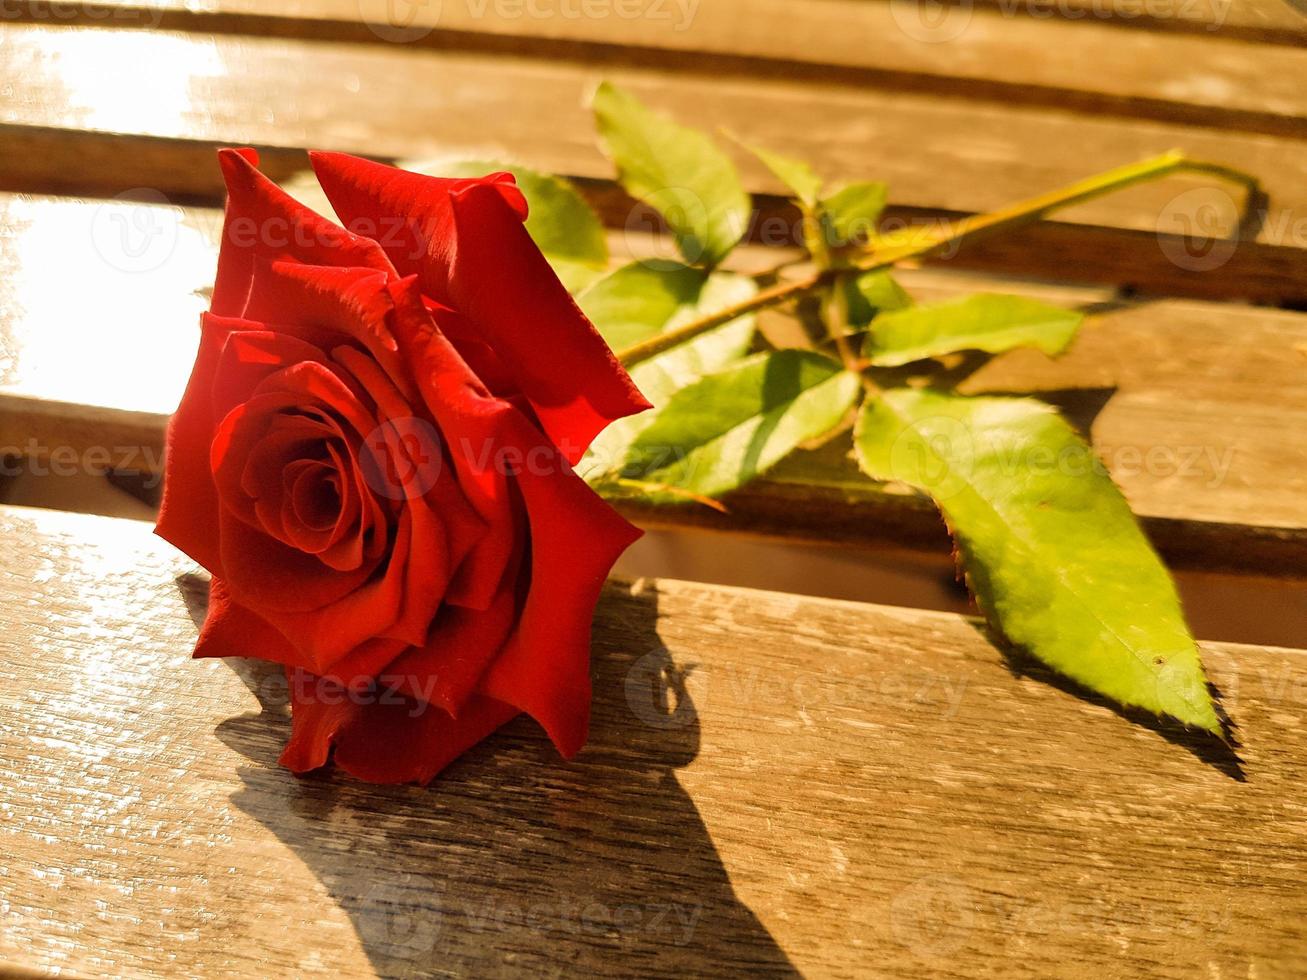 rosa roja de amor foto